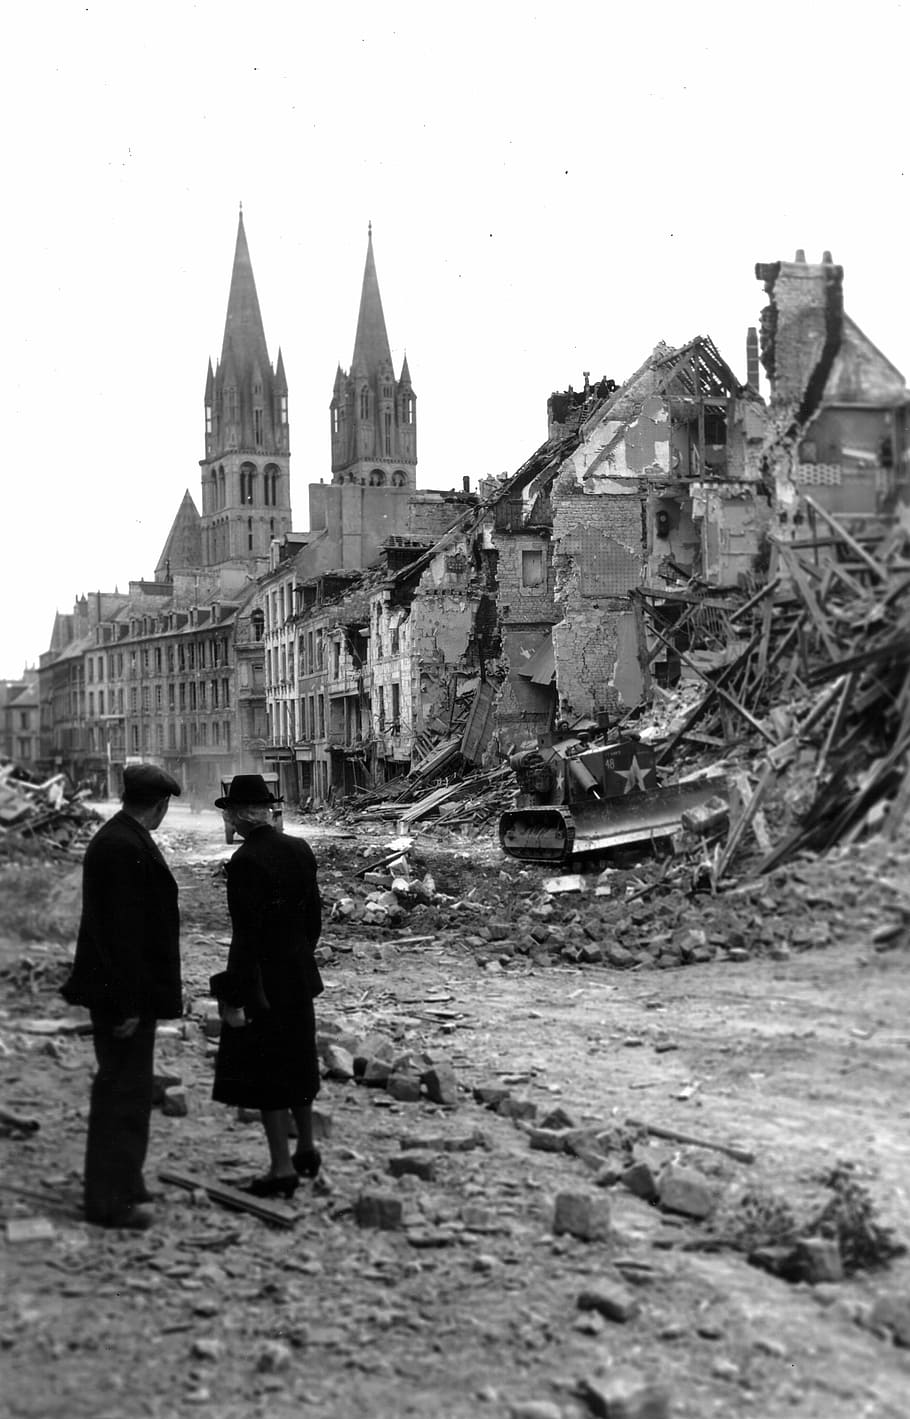 Ruins of Caen, France after World War II, destruction, photos